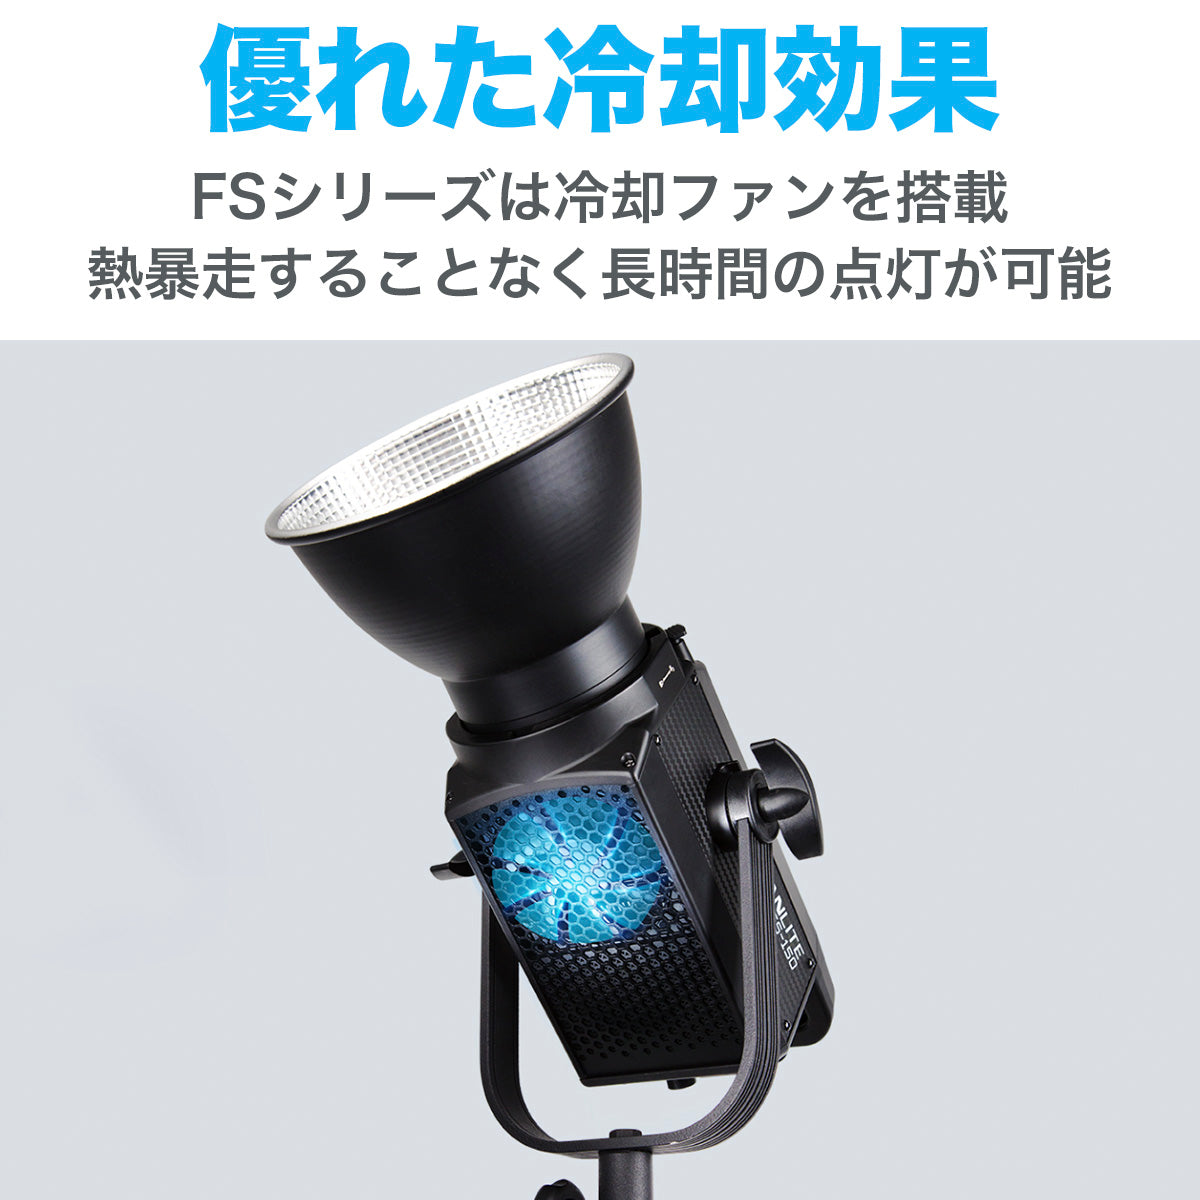 NANLITE FS-150 ナンライト 撮影用ライト スタジライト 撮影照明 スポットライト LEDライト 動画撮影 ポートレート ライブ配信  高輝度 180W 5600K CRI96 12ヶ月保証